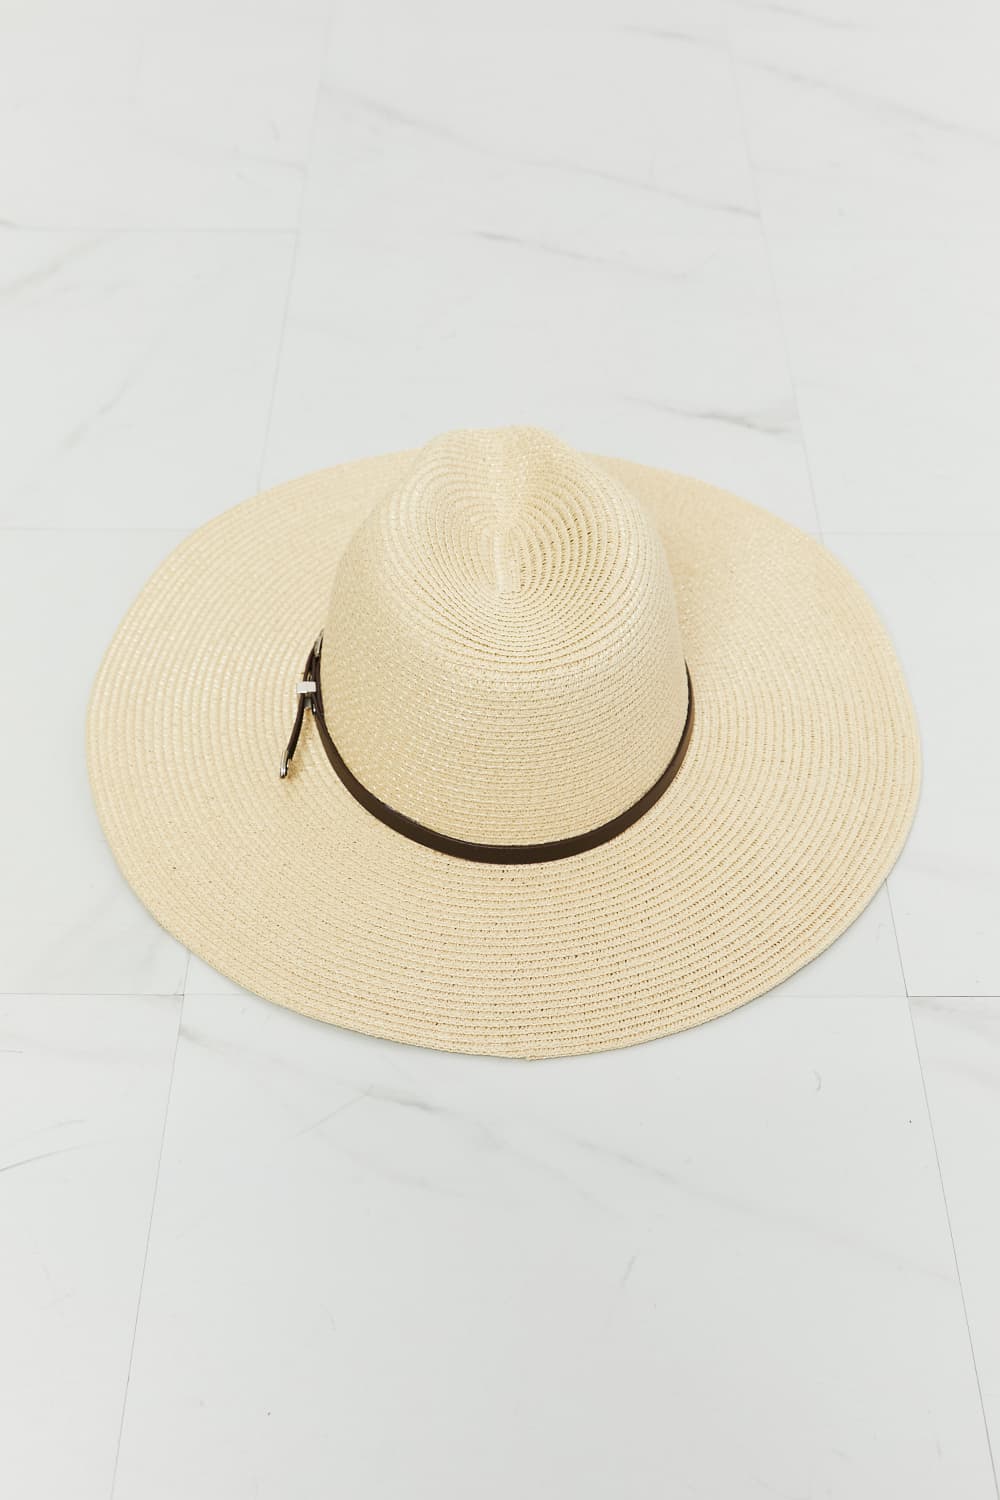 Boho Summer Straw Fedora Hat Ivory One Size Hats by Vim&Vigor | Vim&Vigor Boutique